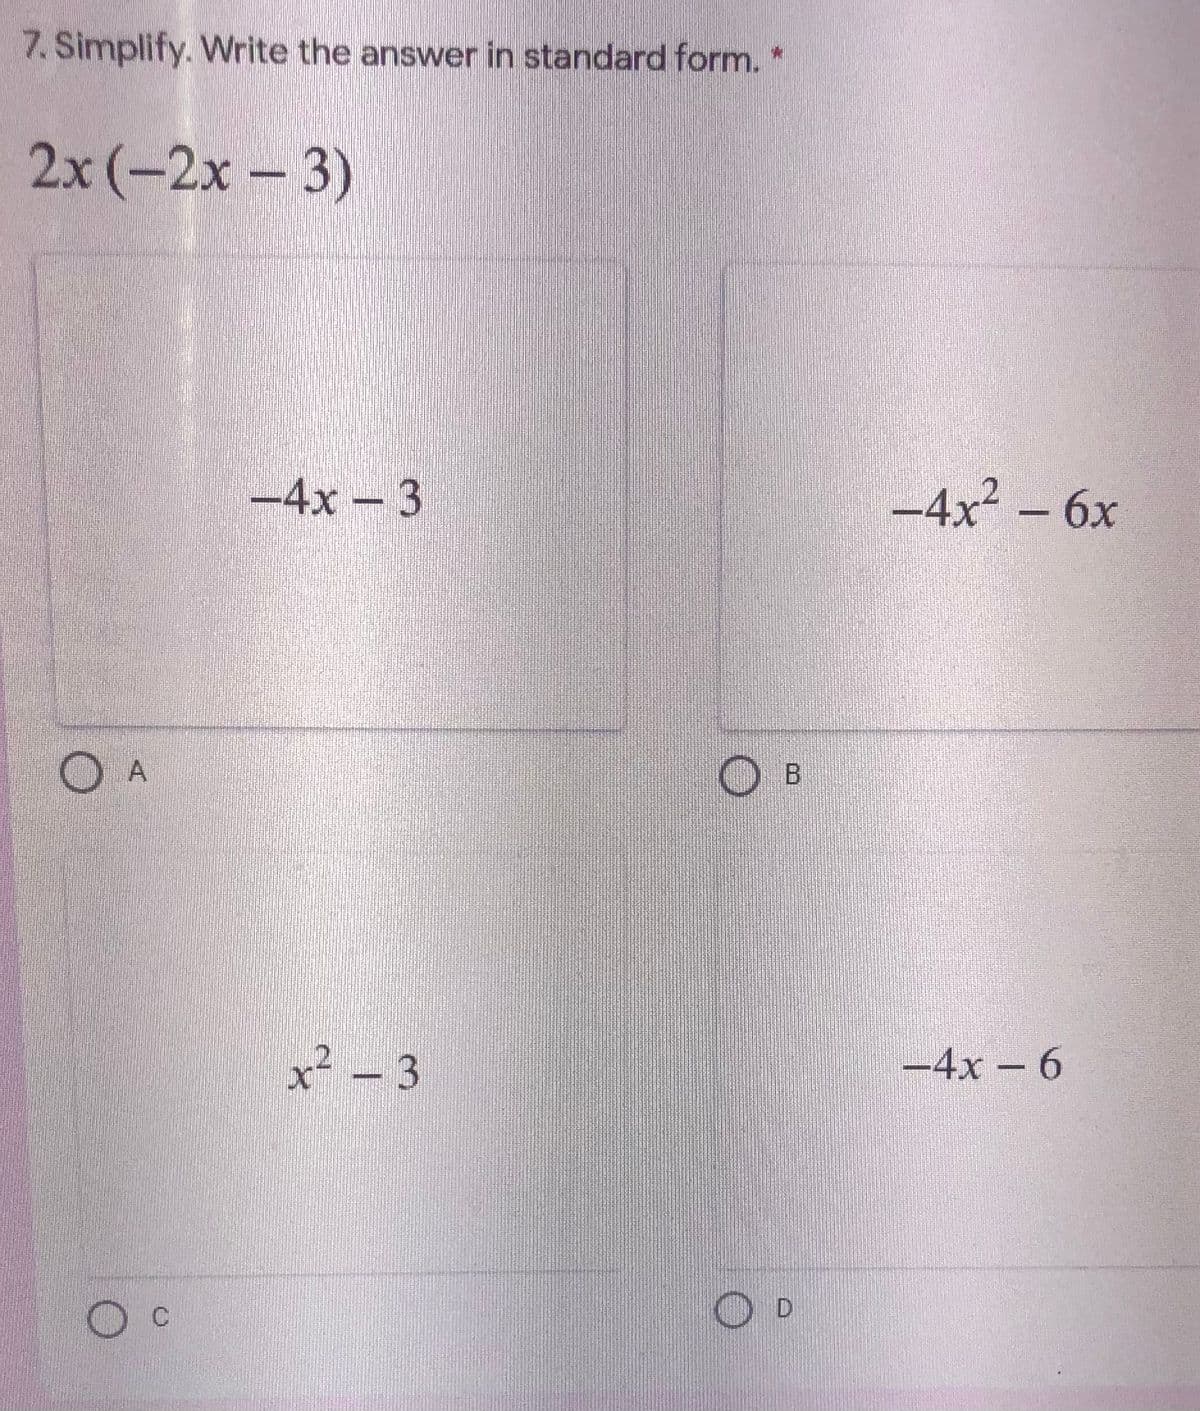 7. Simplify. Write the answer in standard form. *
2x (-2х-3)
-4x - 3
-4x² – 6x
O A
O B
x² – 3
21
-4x – 6
D
